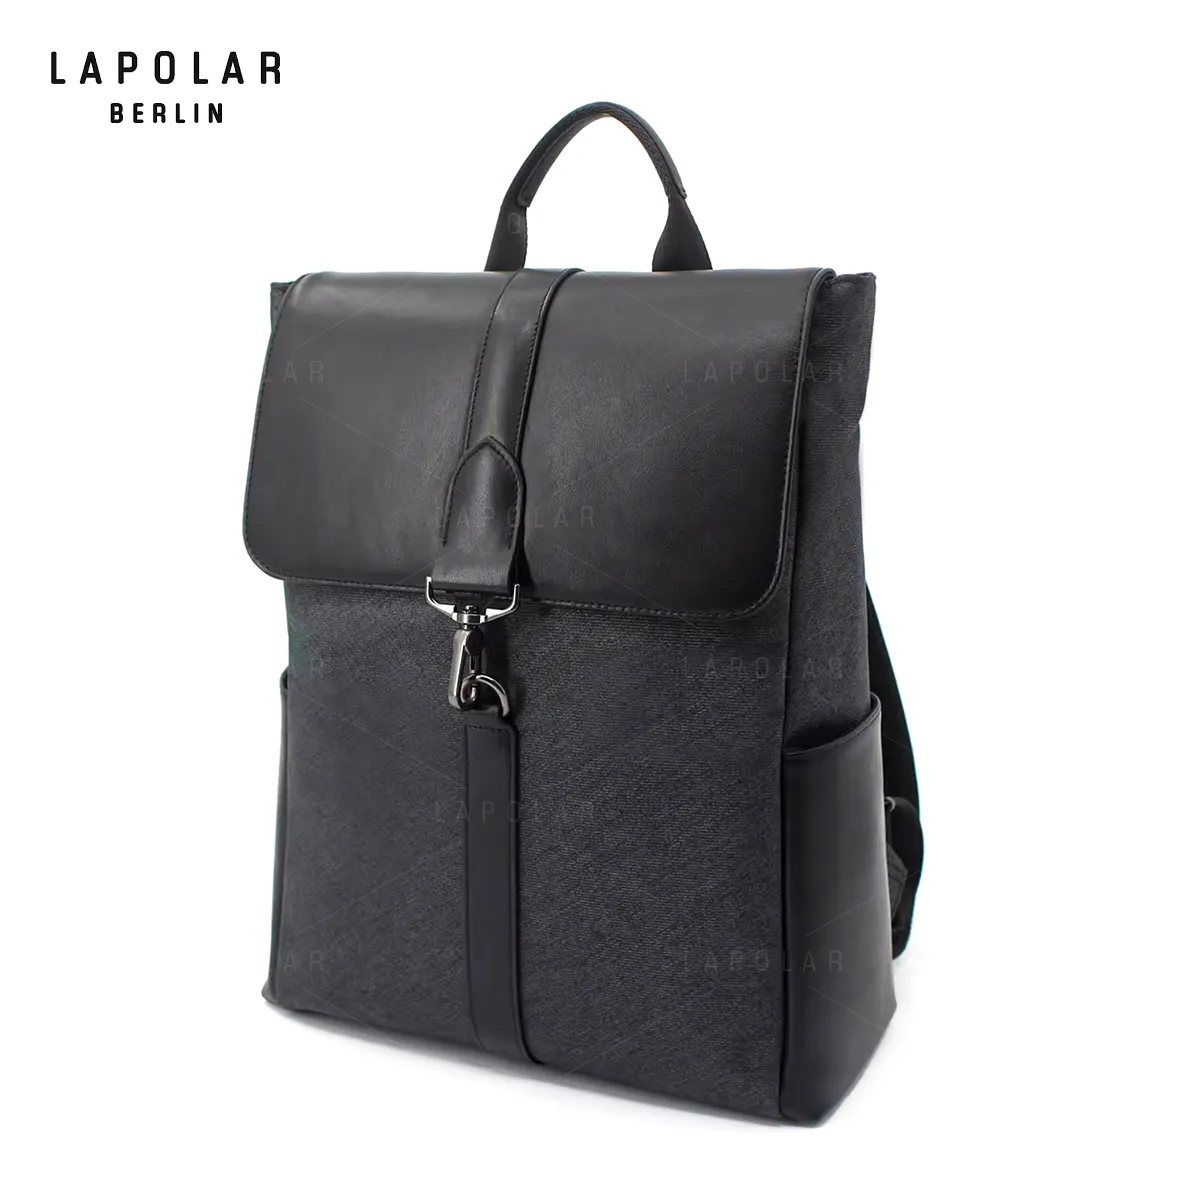 LAPOLAR fabrika yüksek kaliteli naylon deri öğrenci seyahat iş fonksiyonlu sırt çantası açık moda kolej için